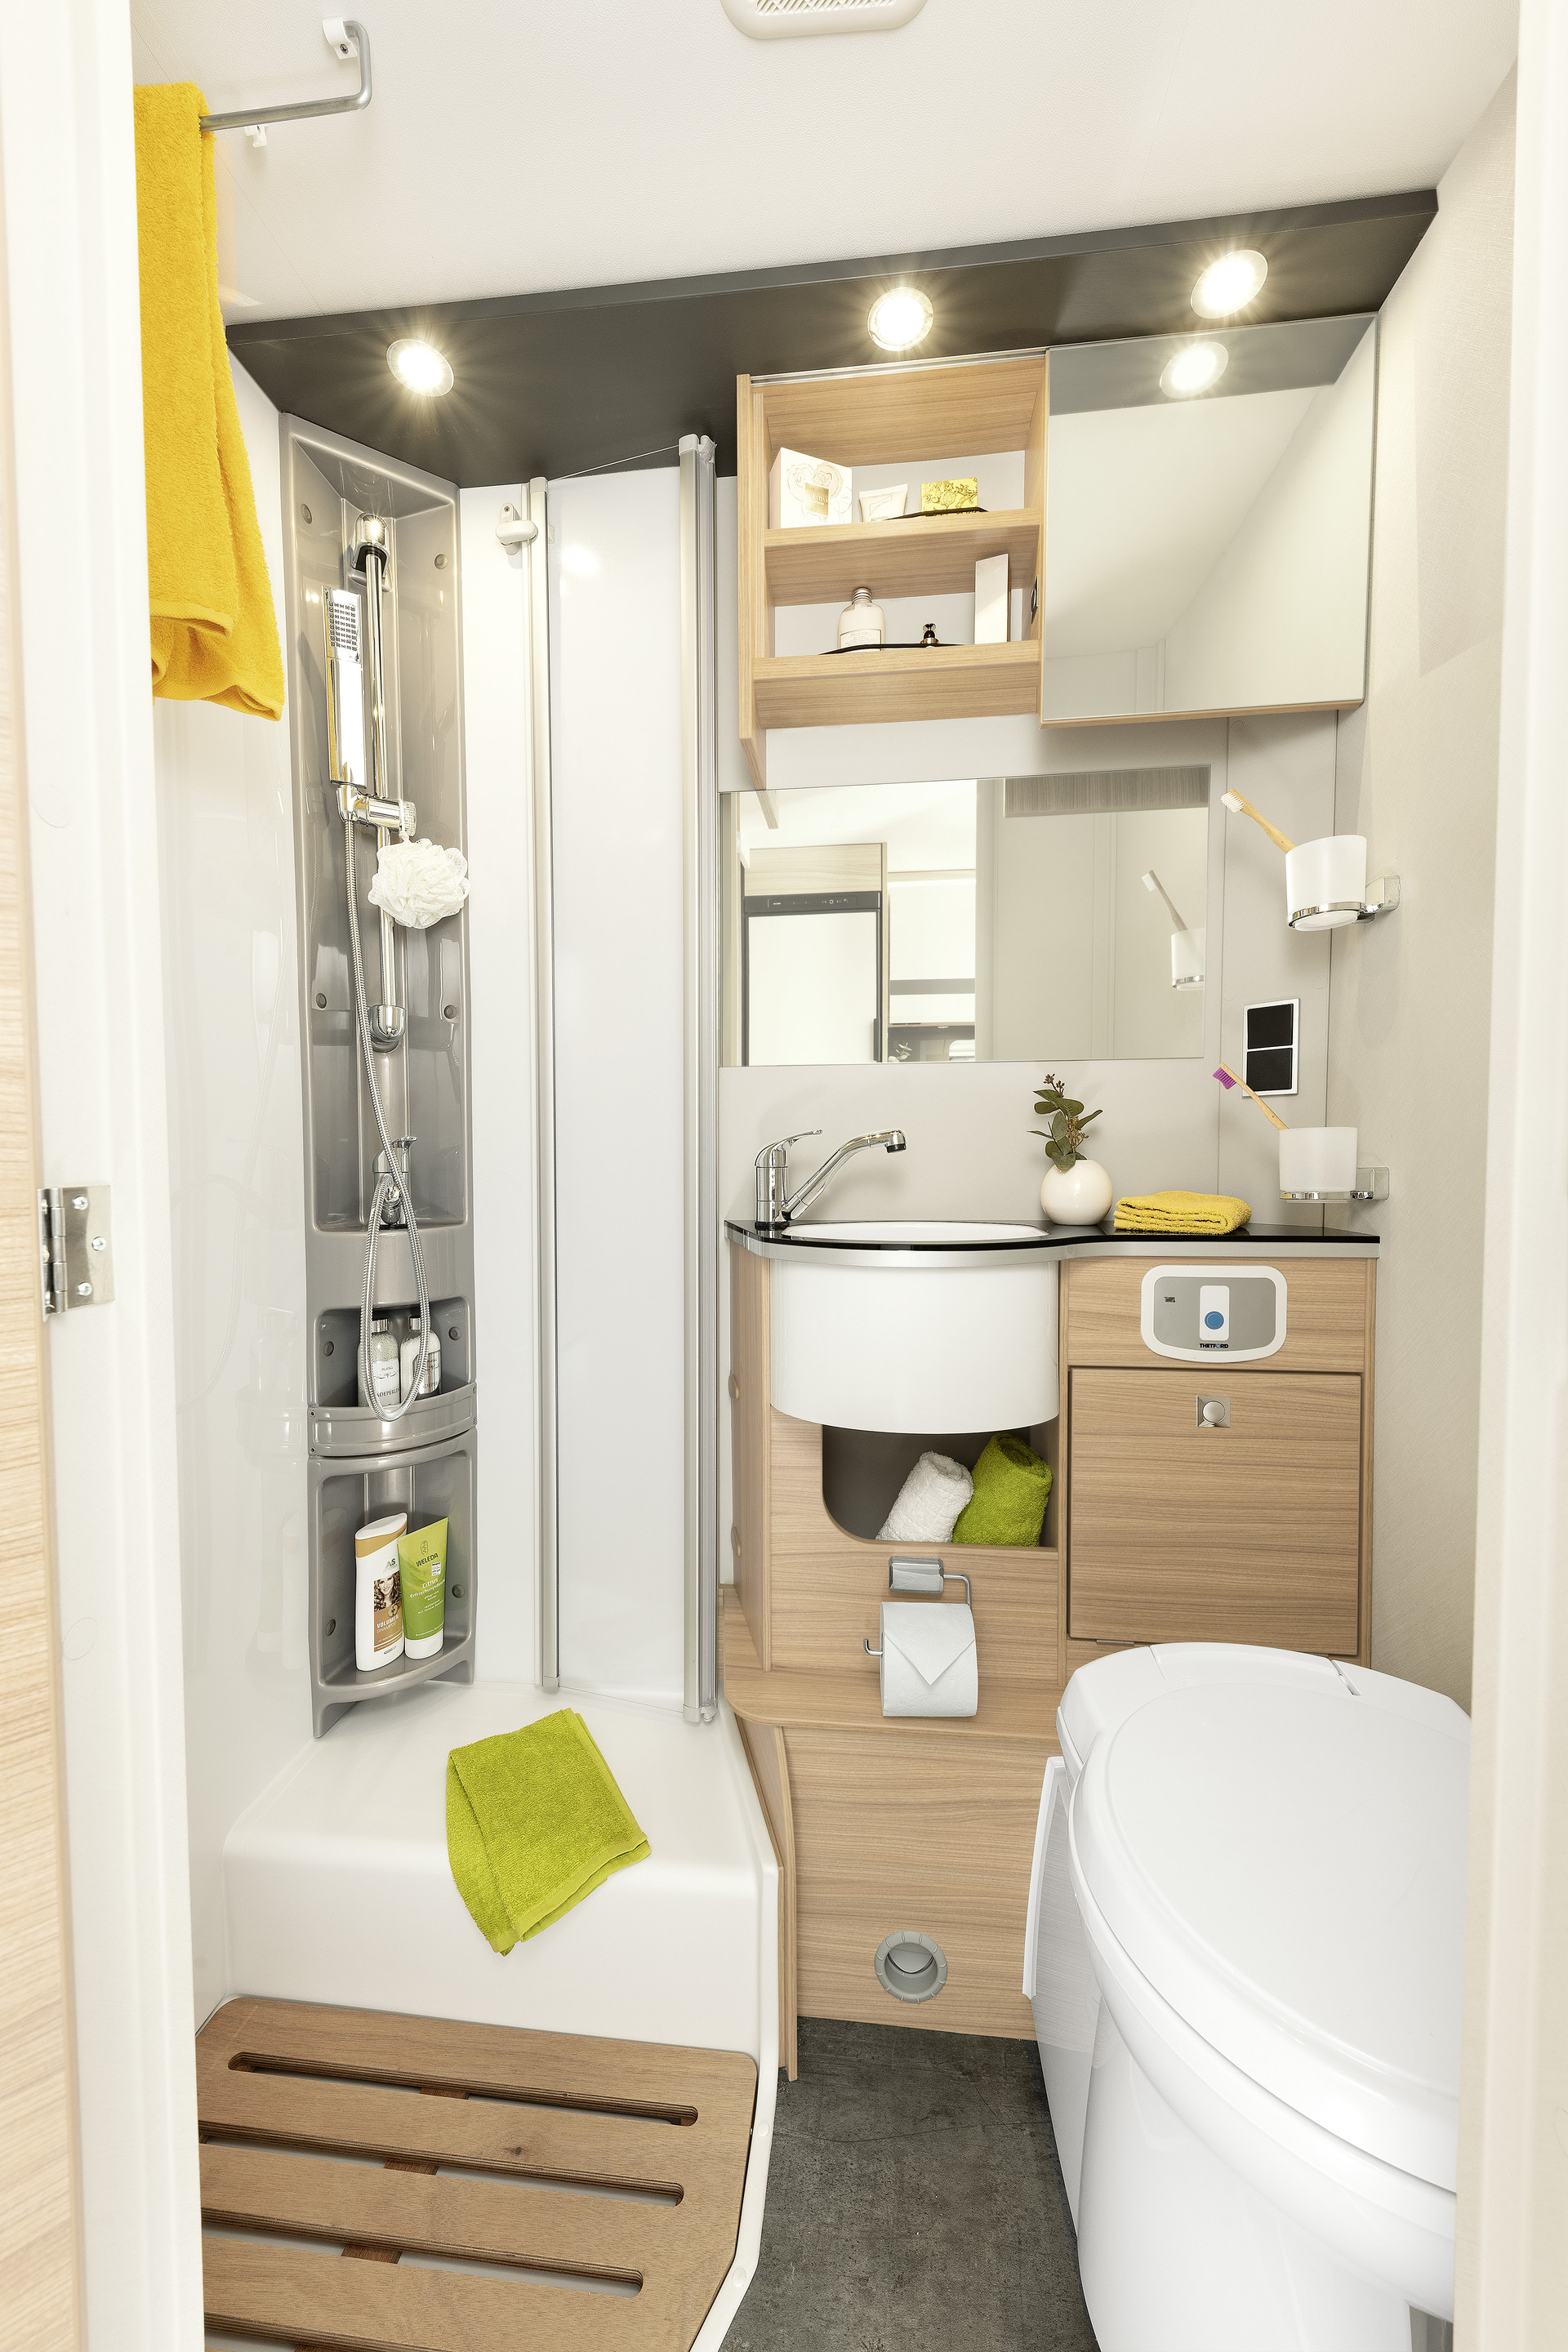 L’I 6 dispone di una grande cabina doccia separata, un lavabo ben accessibile e molto spazio di stivaggio • I 6